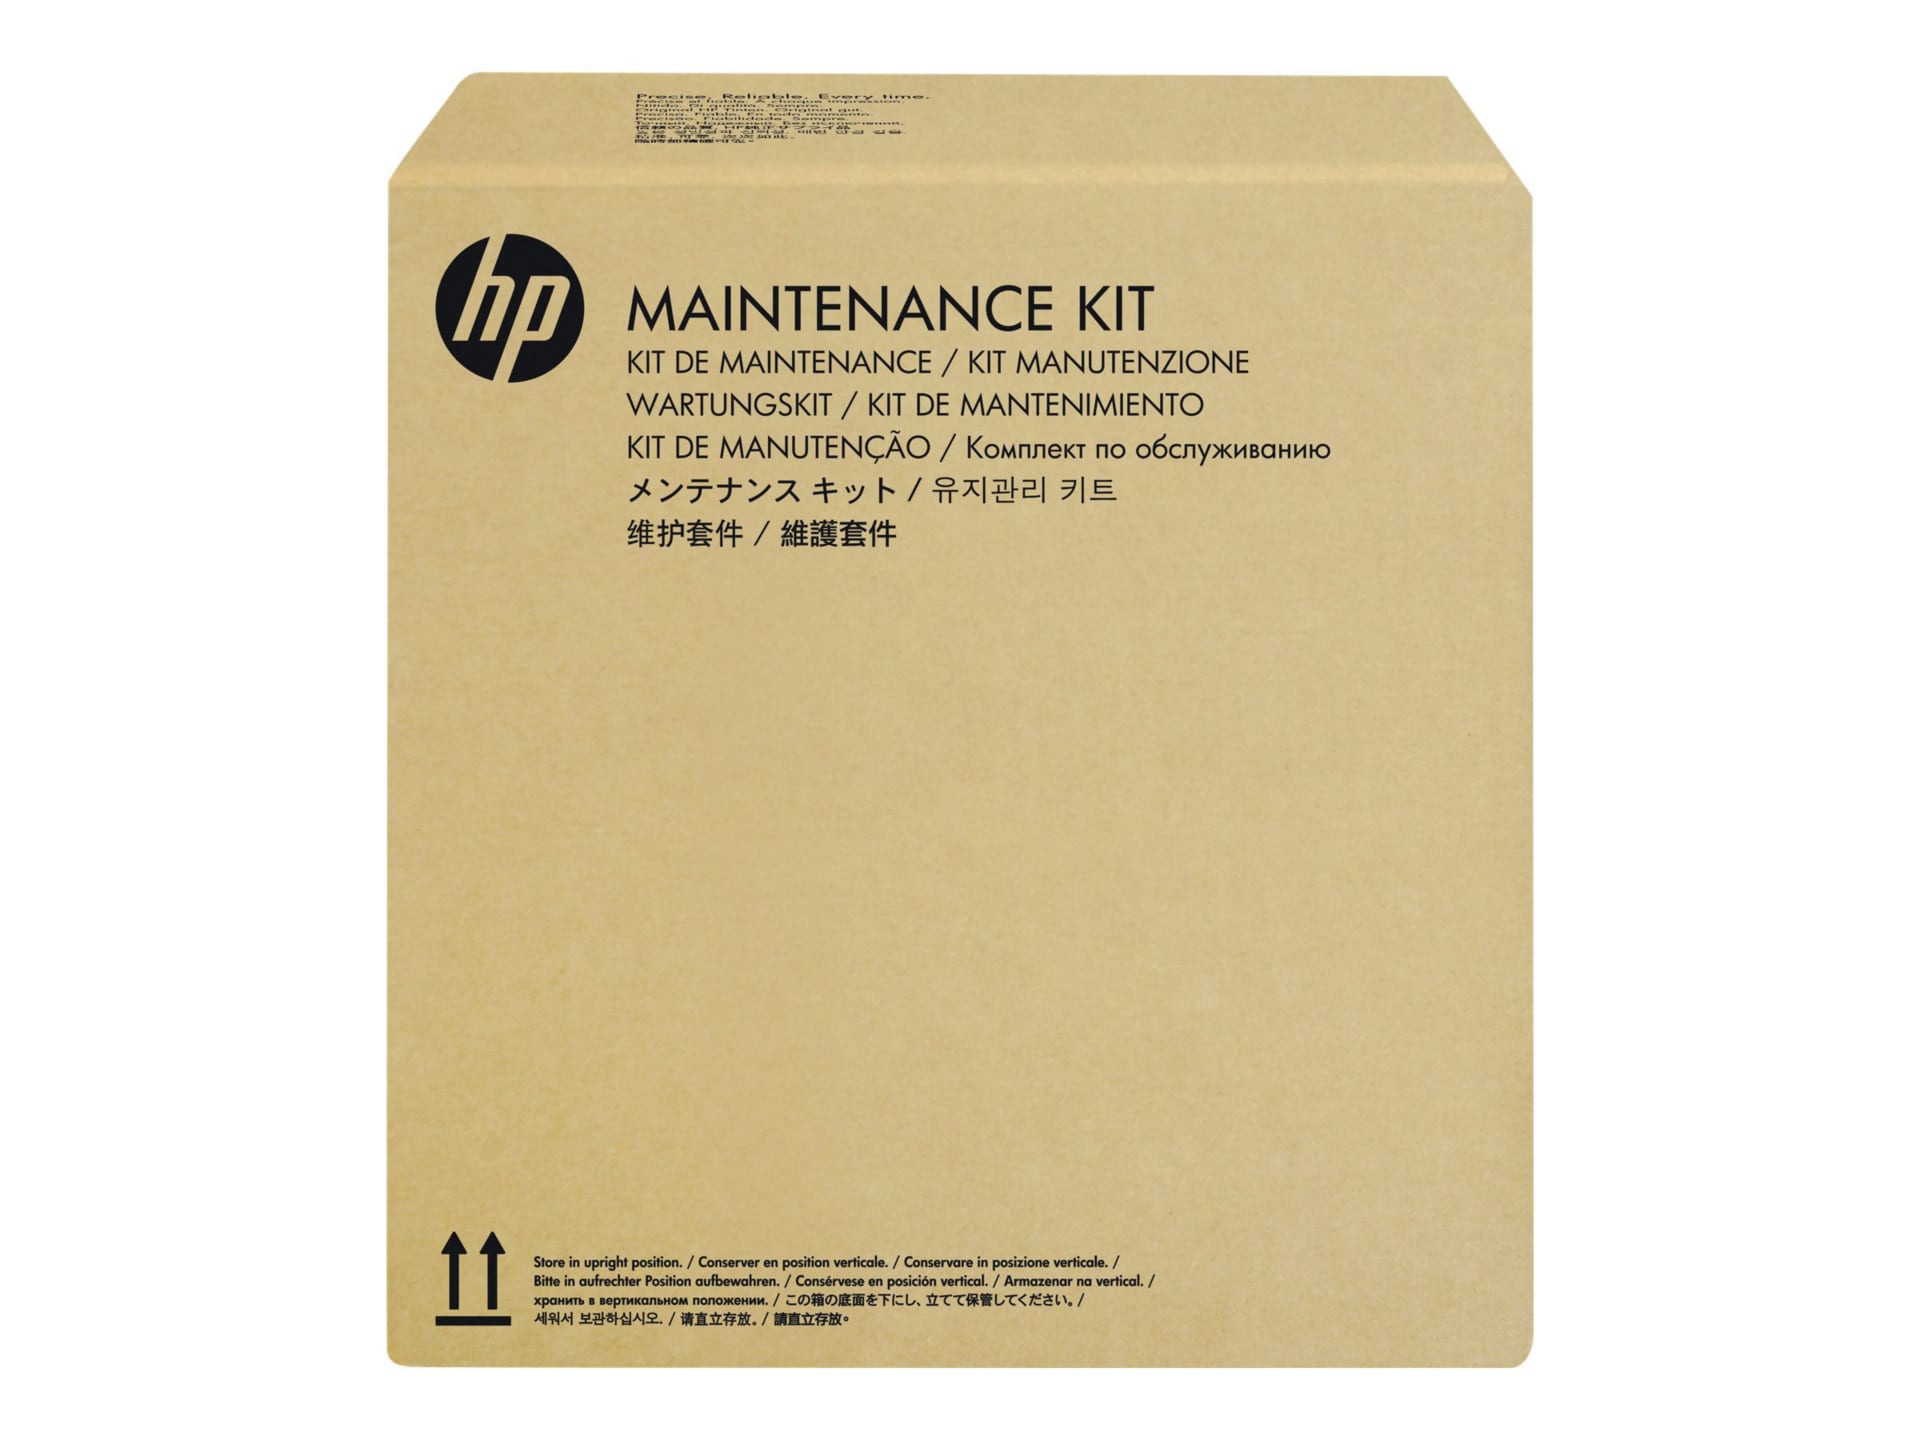 HP Scanjet Roller Replacement Kit - maintenance kit